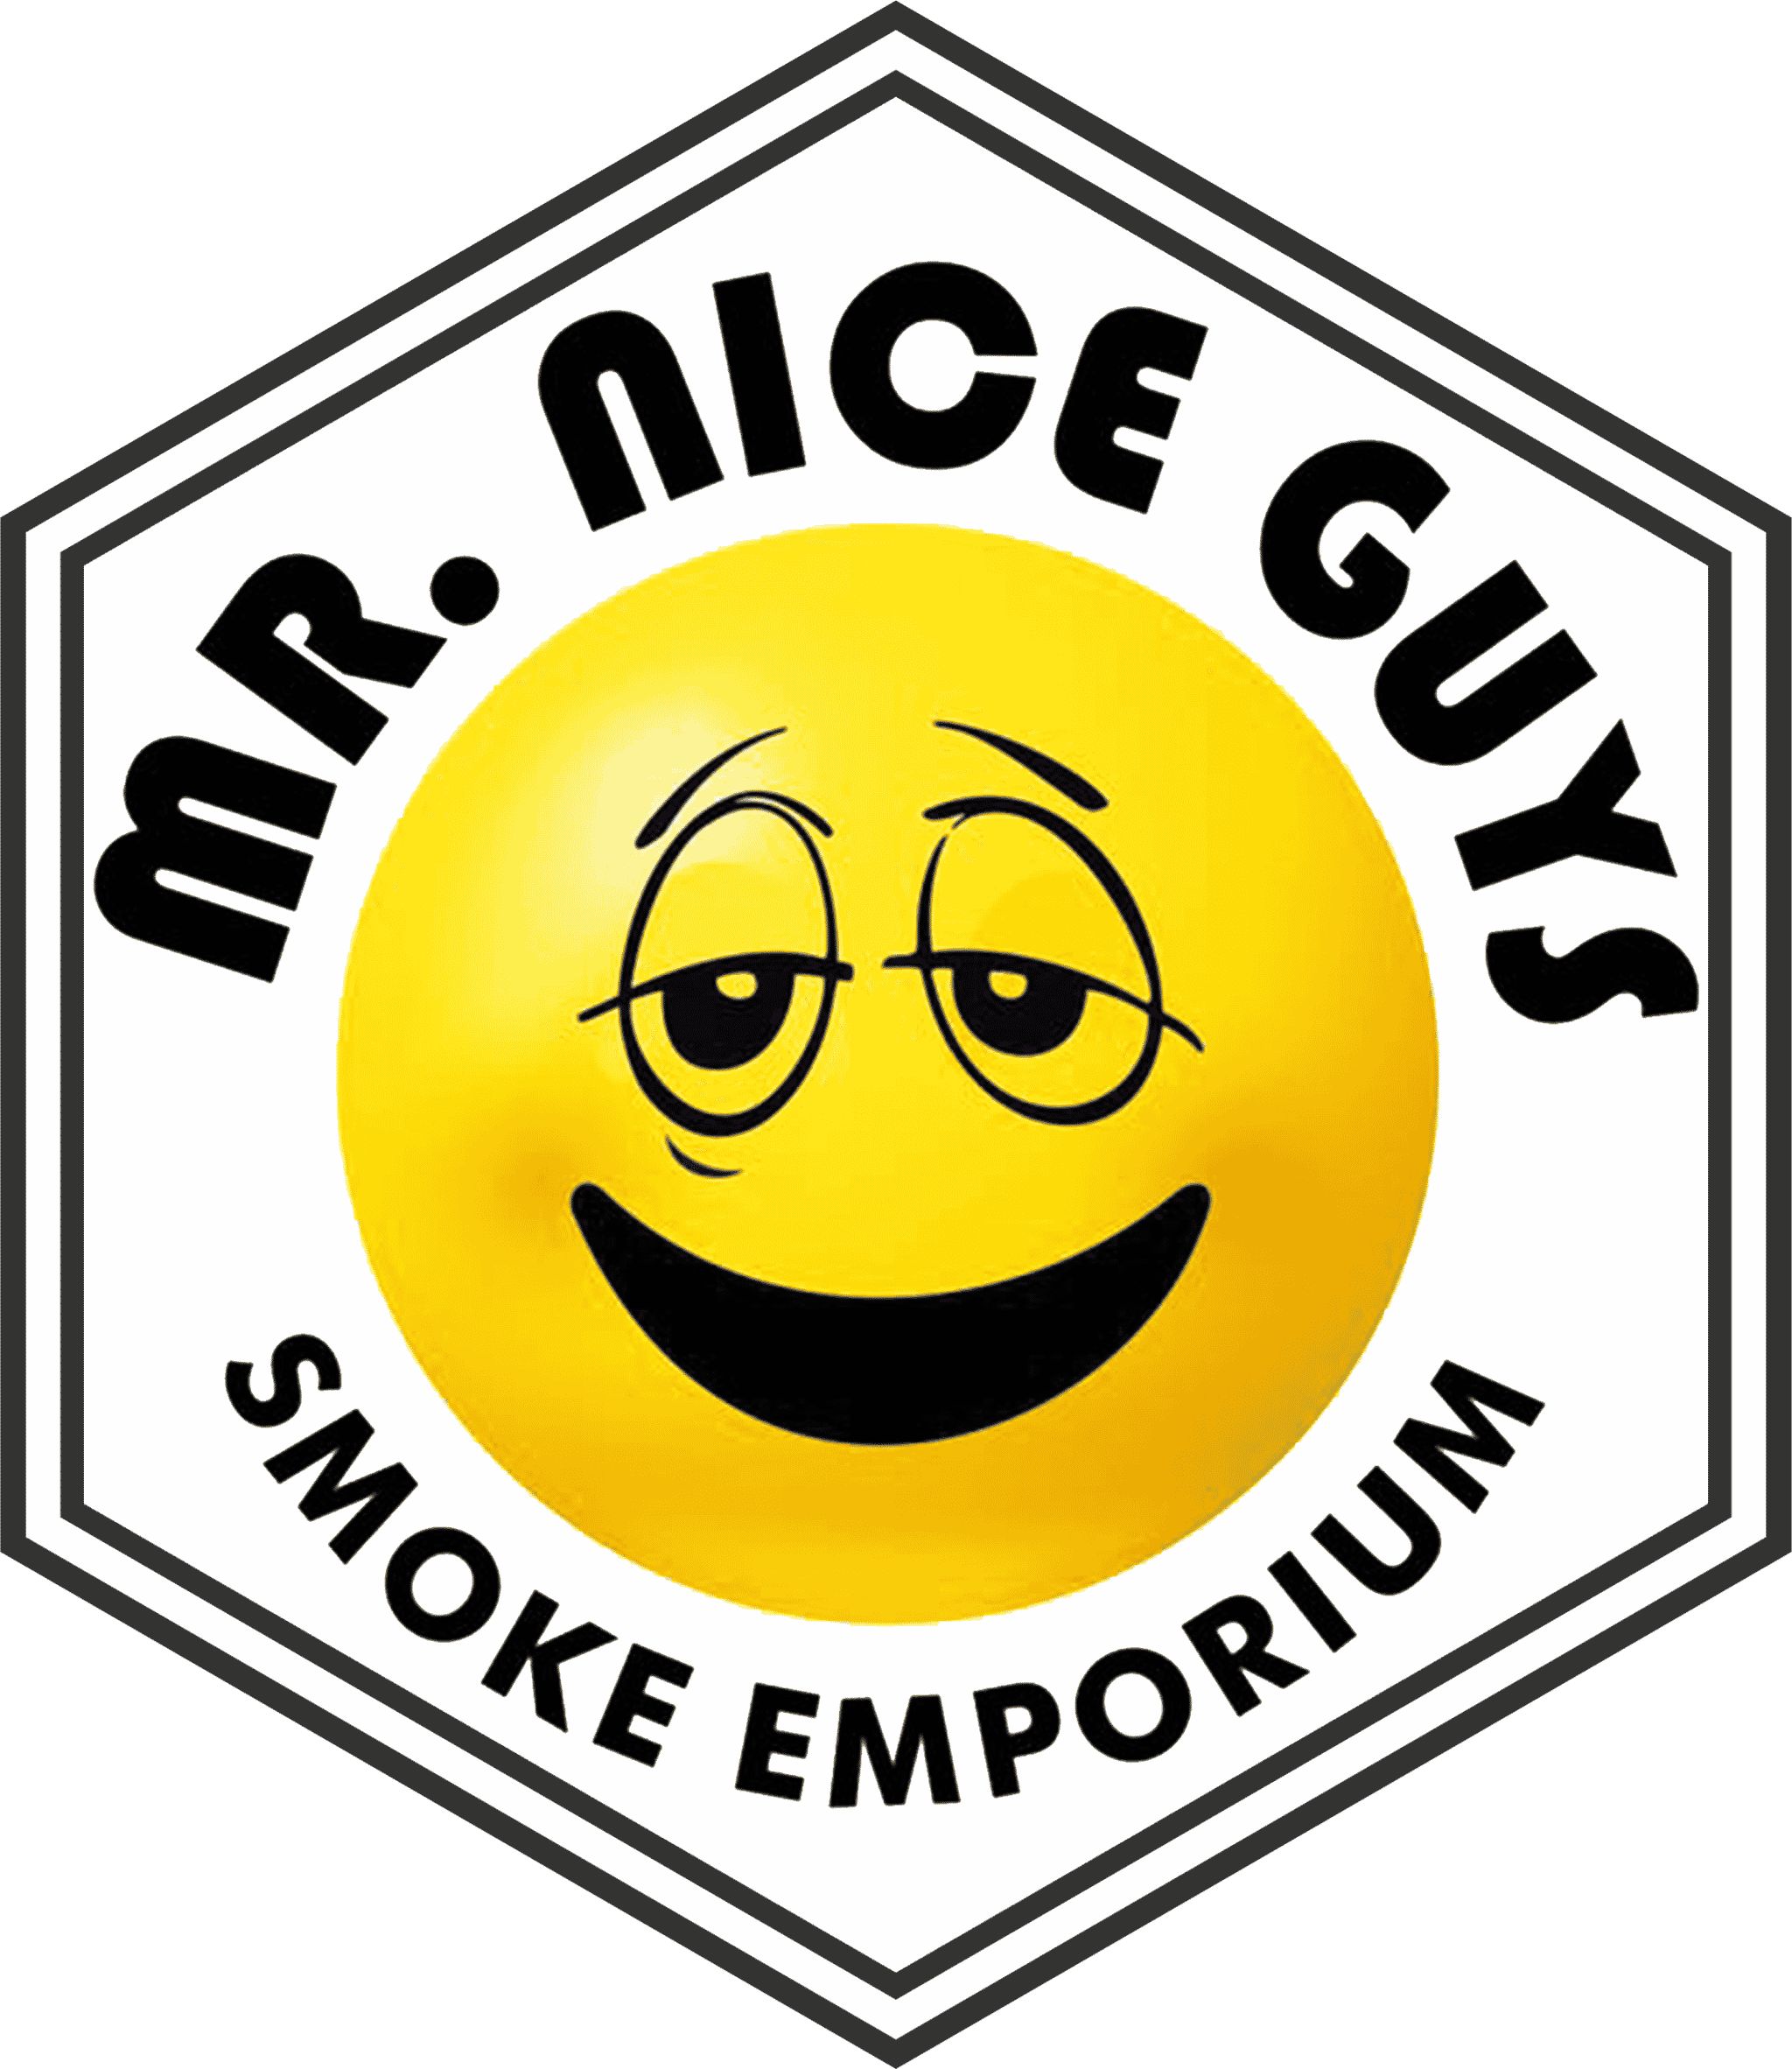 Mr. Nice Guy’s Smoke Emporium, 905 E New Haven Ave #100, Melbourne, FL 32901, United States